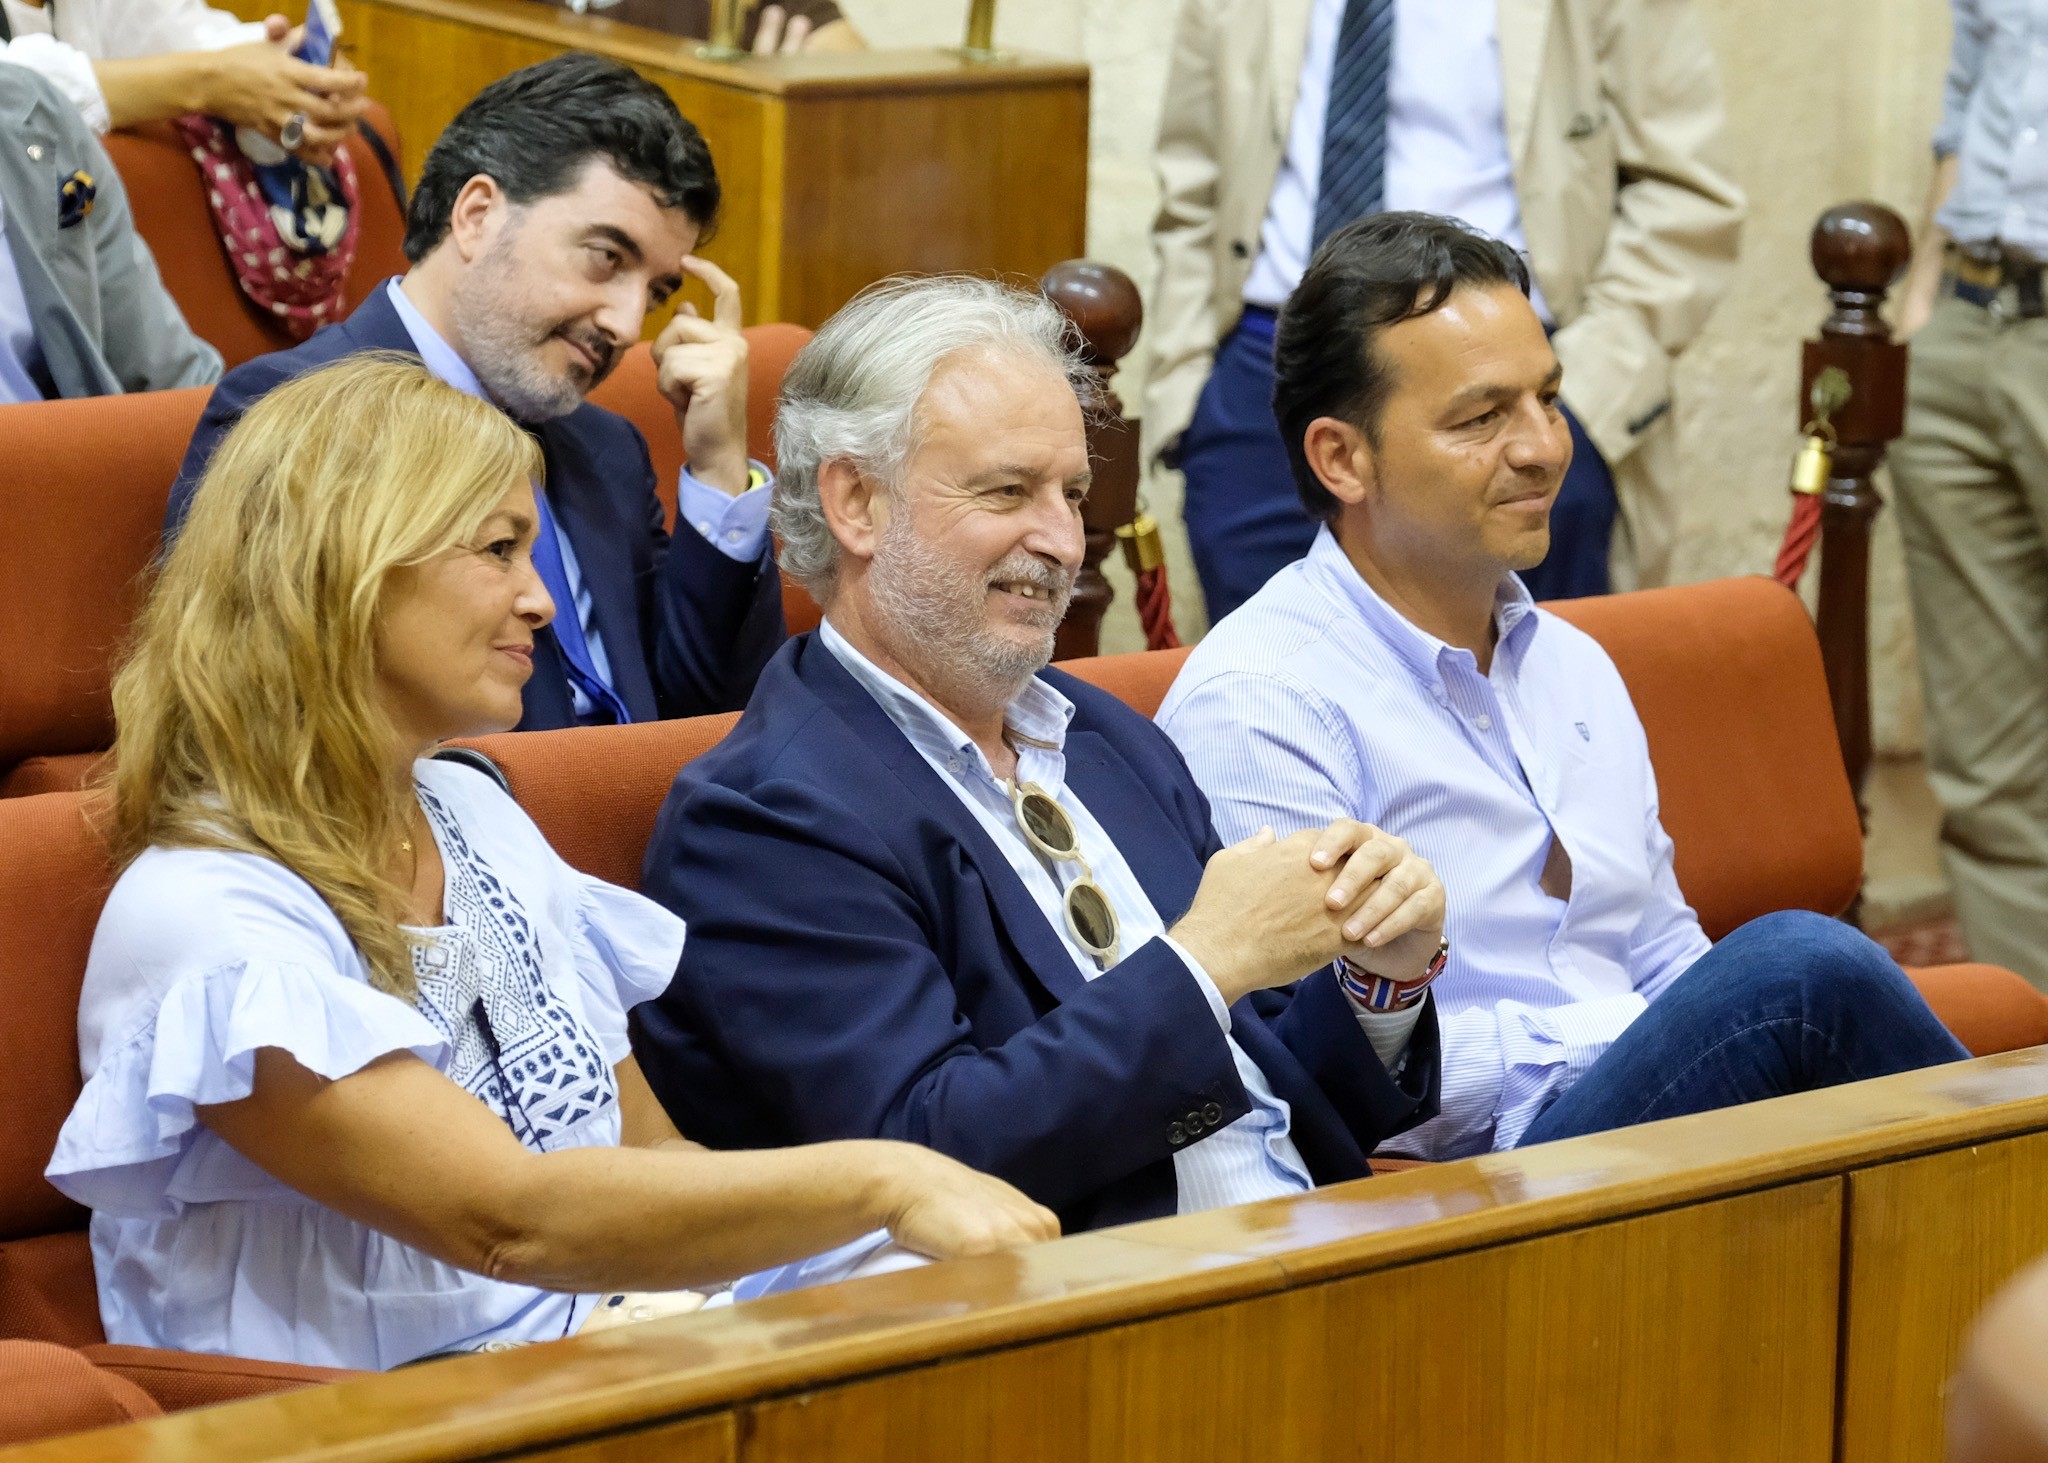  Rafael Porras, elegido por el Pleno presidente del Consejo de Administracin de la RTVA, sigue la votacin junto a los consejeros Esther Fernndez y Carlos Morillas